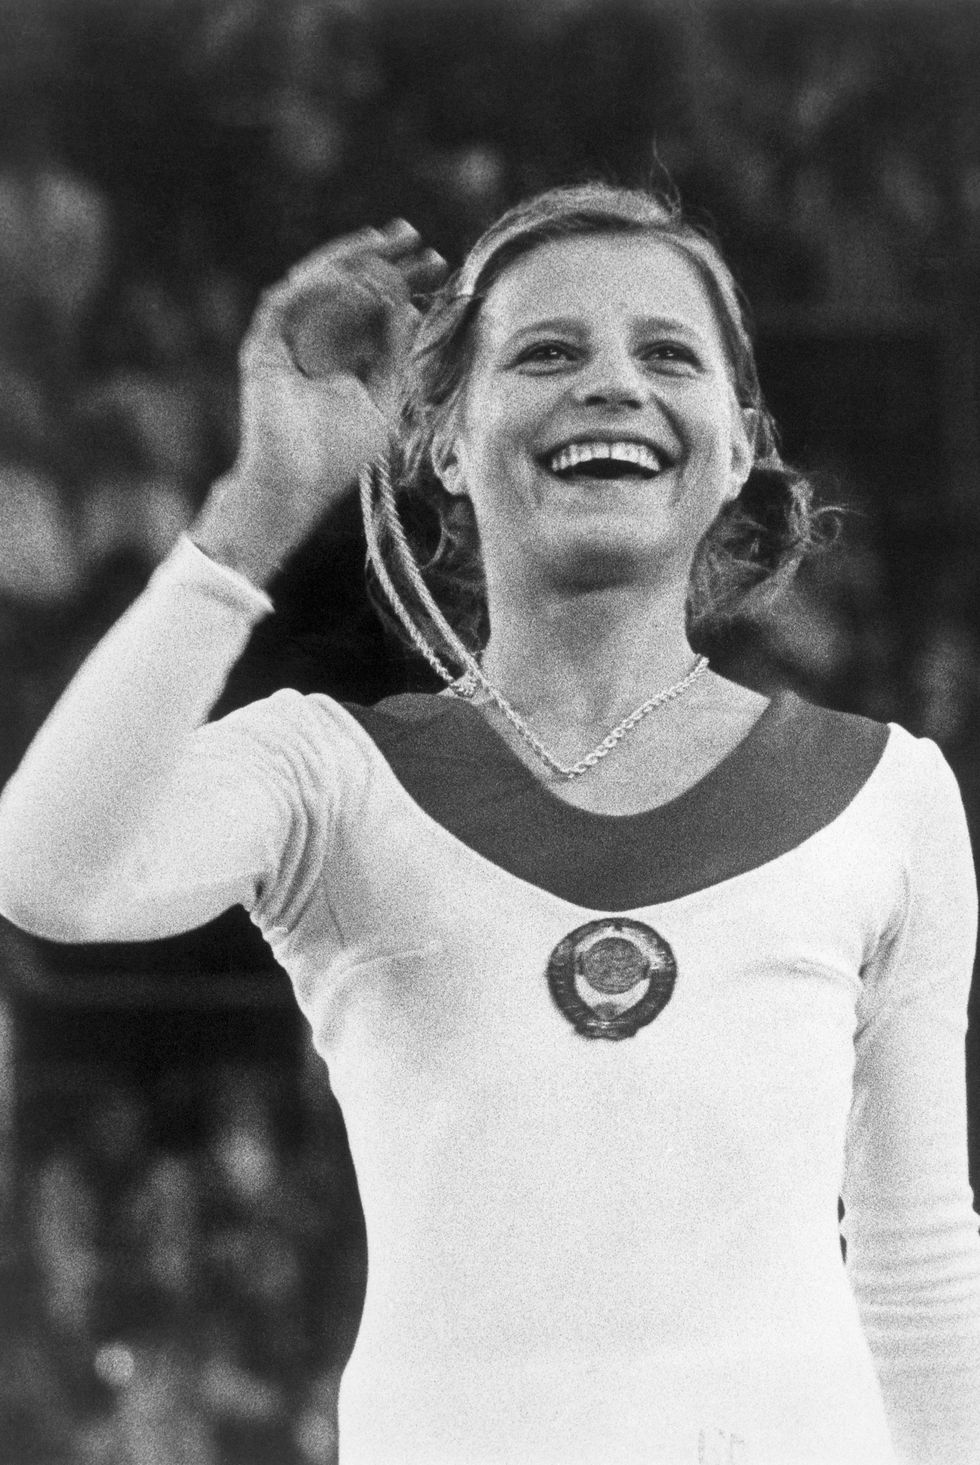 gymnast olga korbut holding gold medal, 1972